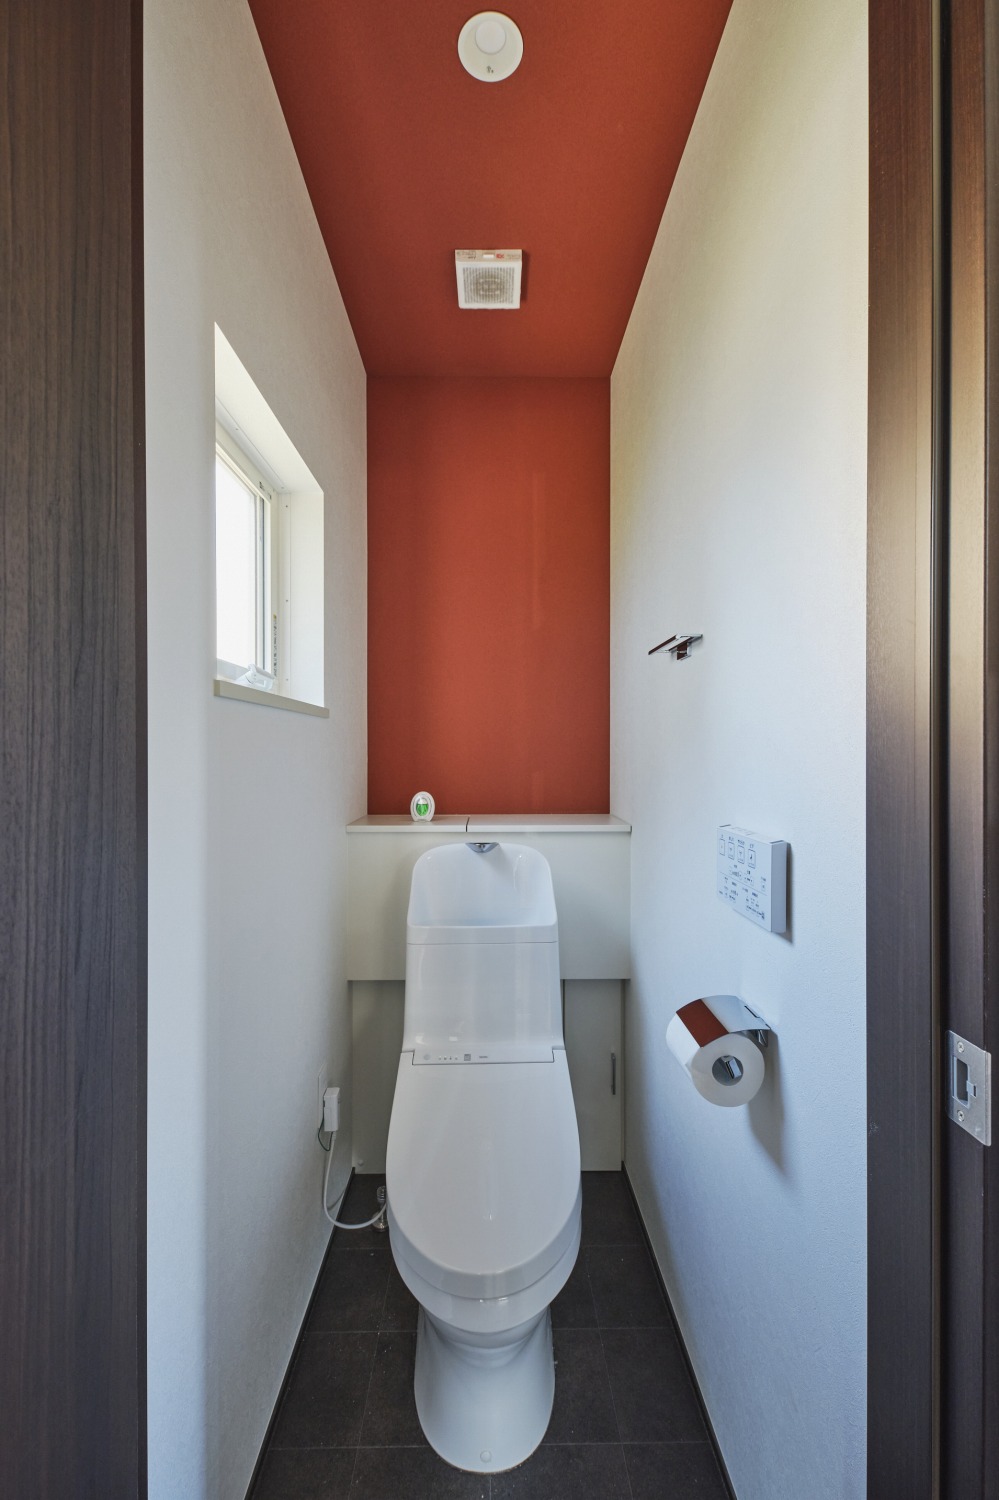 和を感じる色彩のトイレ空間の画像